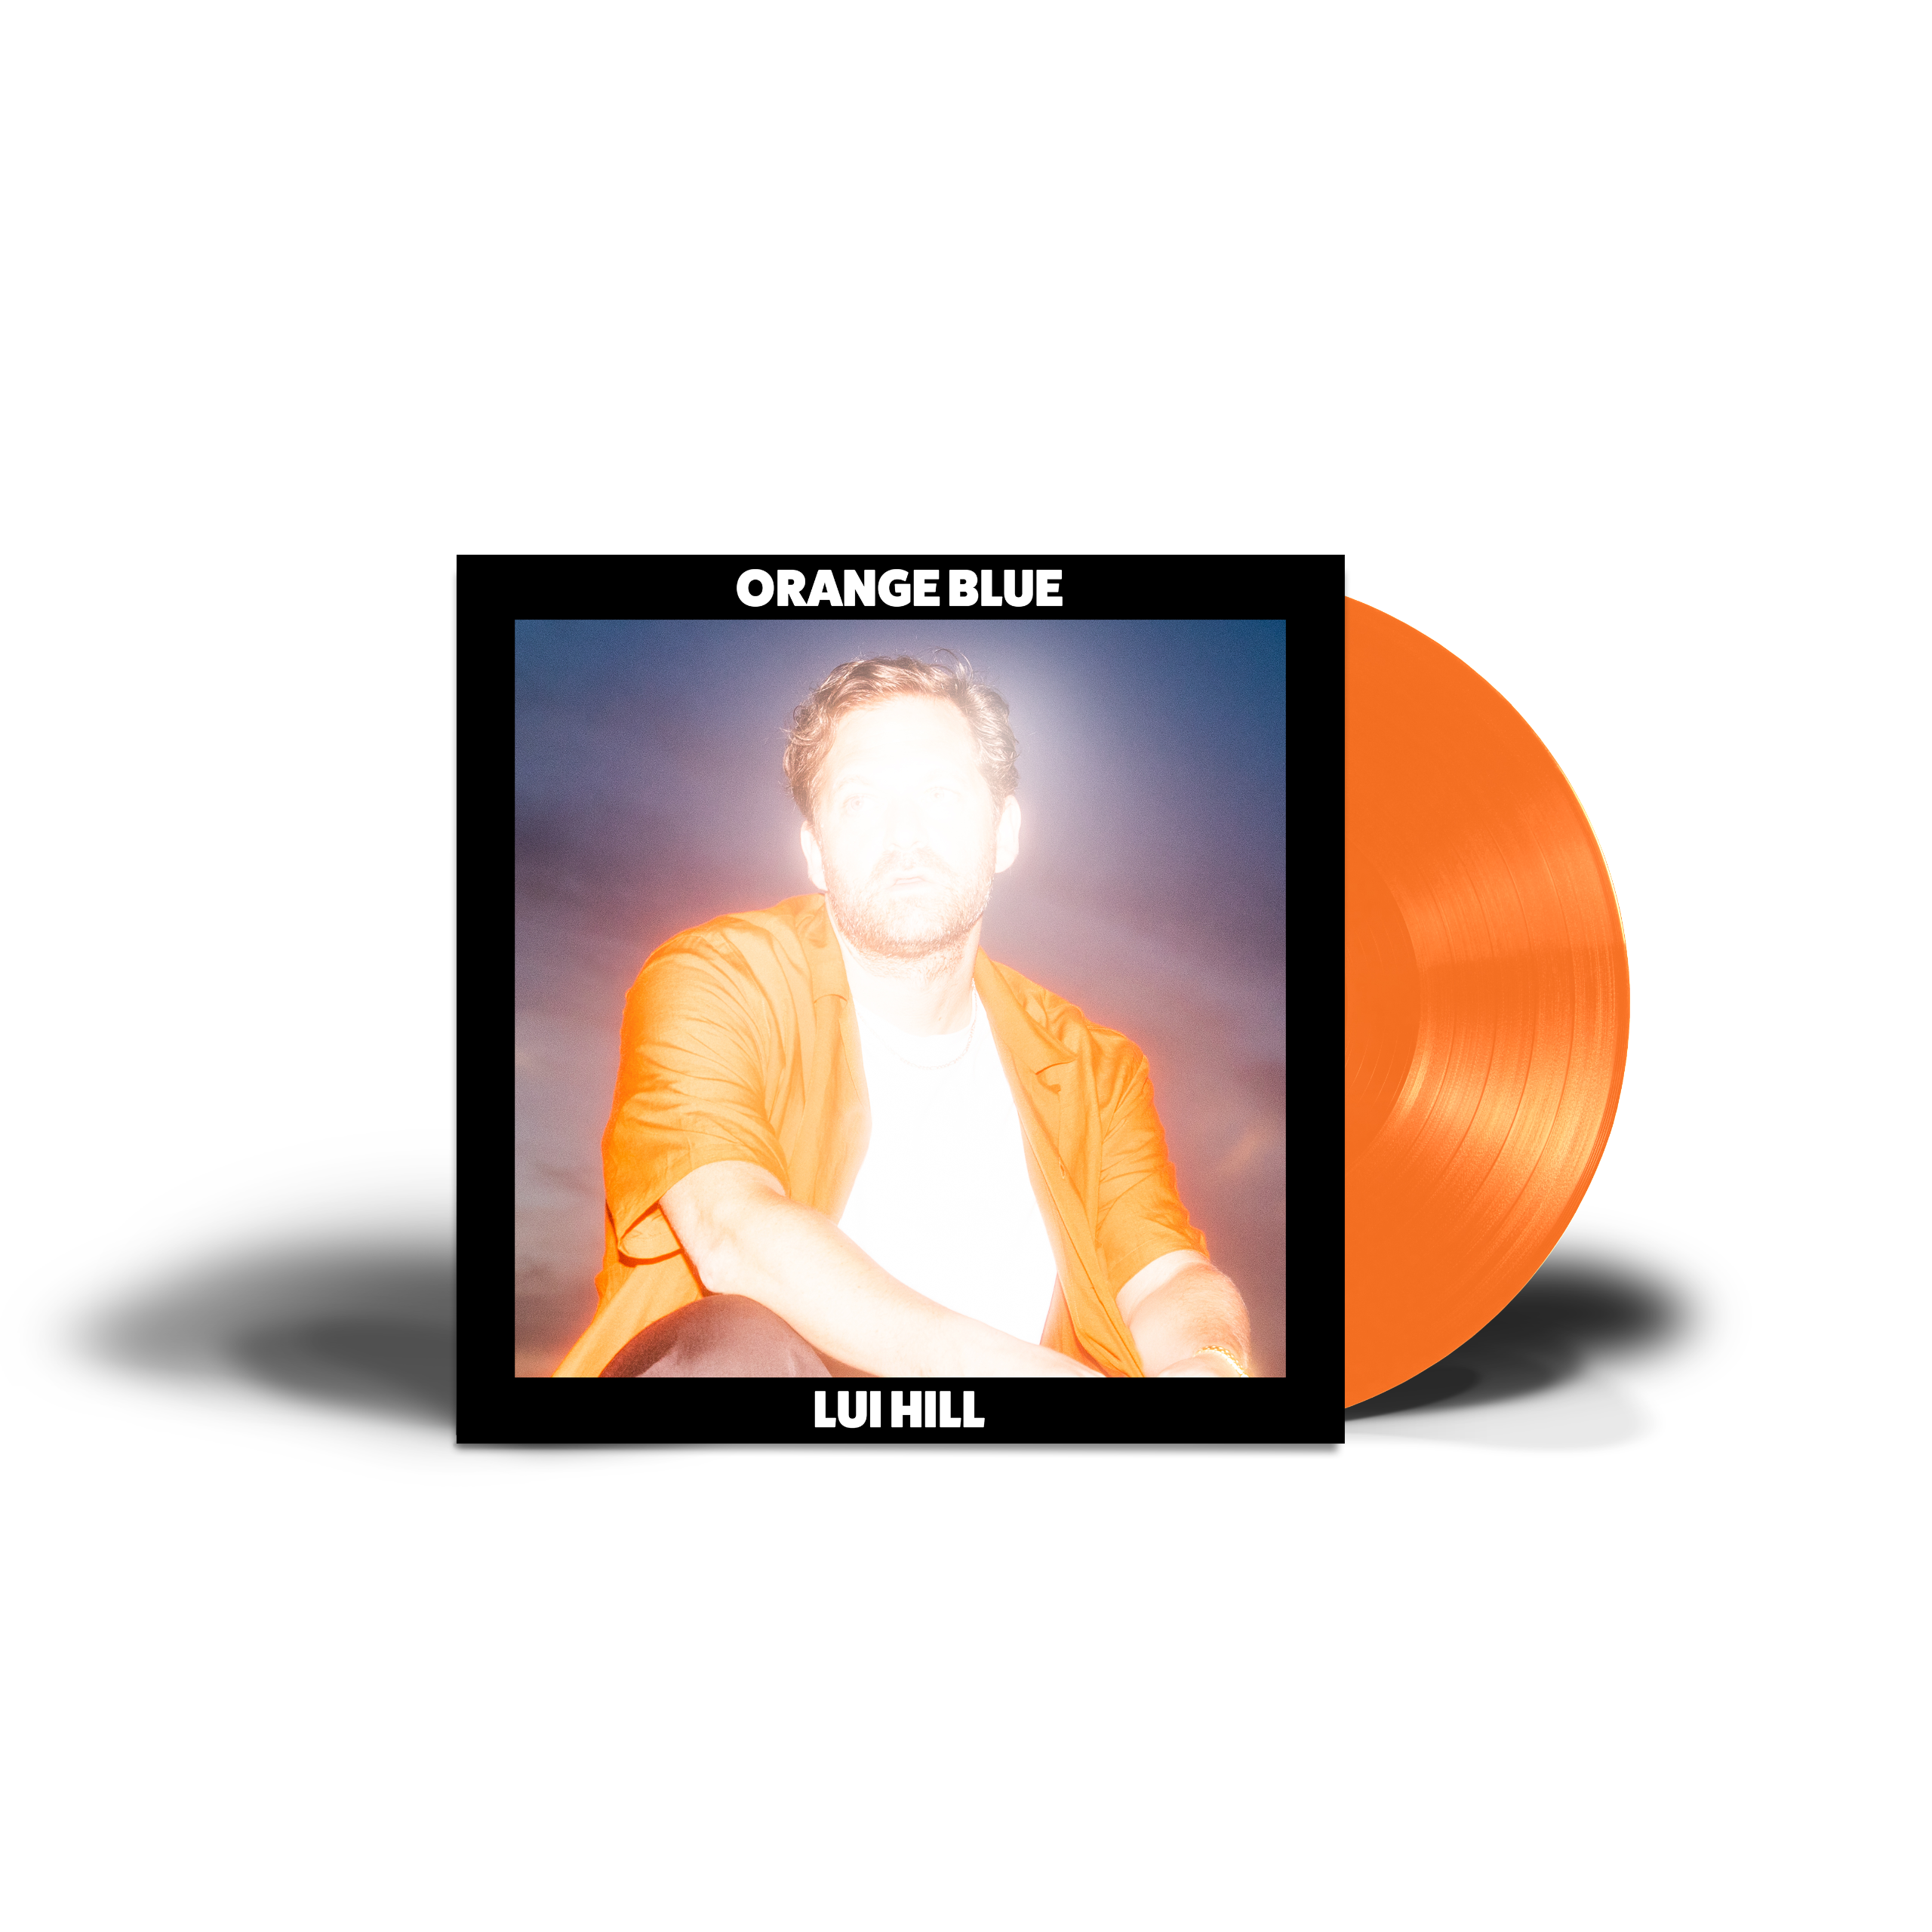 Vinyl) (Vinyl) Hill Lui (Orange Blue - Orange -